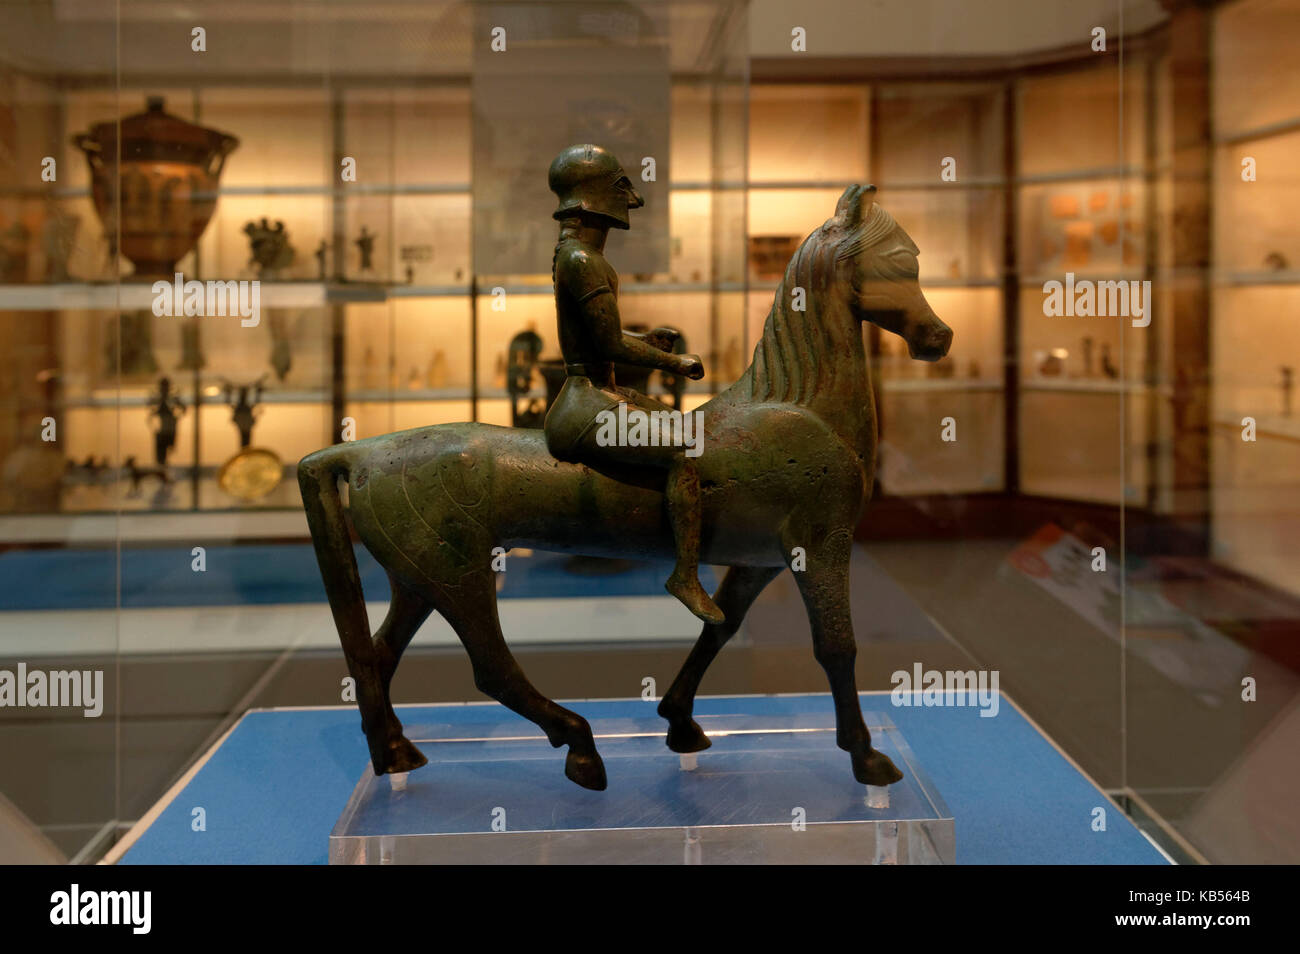 Reino Unido, Londres, Bloomsbury, el British Museum, una estatuilla de bronce de un guerrero a caballo, alrededor del año 550 a.c. Foto de stock